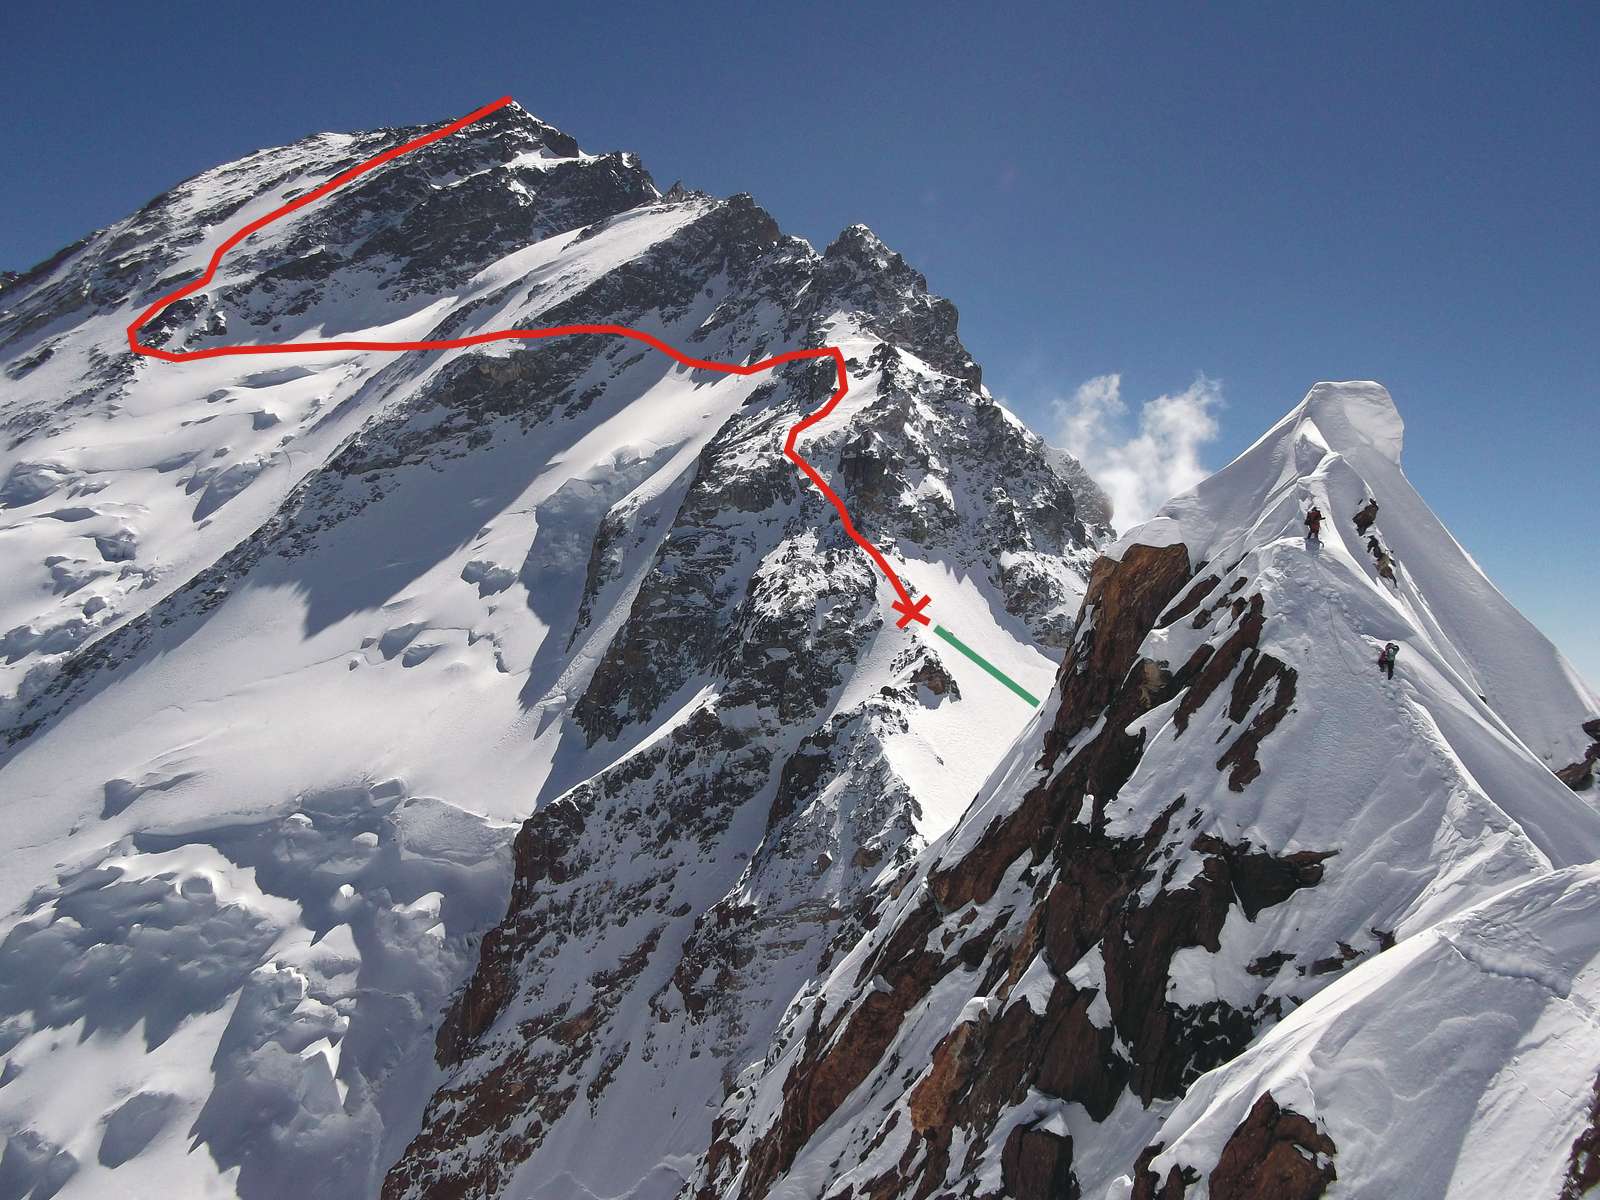  максимальная высота, на которую взошли зимой 2014 года альпинисты Дэвид Геттлет и Томаш Мацкевич составила 7200 метров: точка отмеченная на фото крестом. Красная линия - дальнейший путь к вершине, по которому альпинисты планировали подниматься